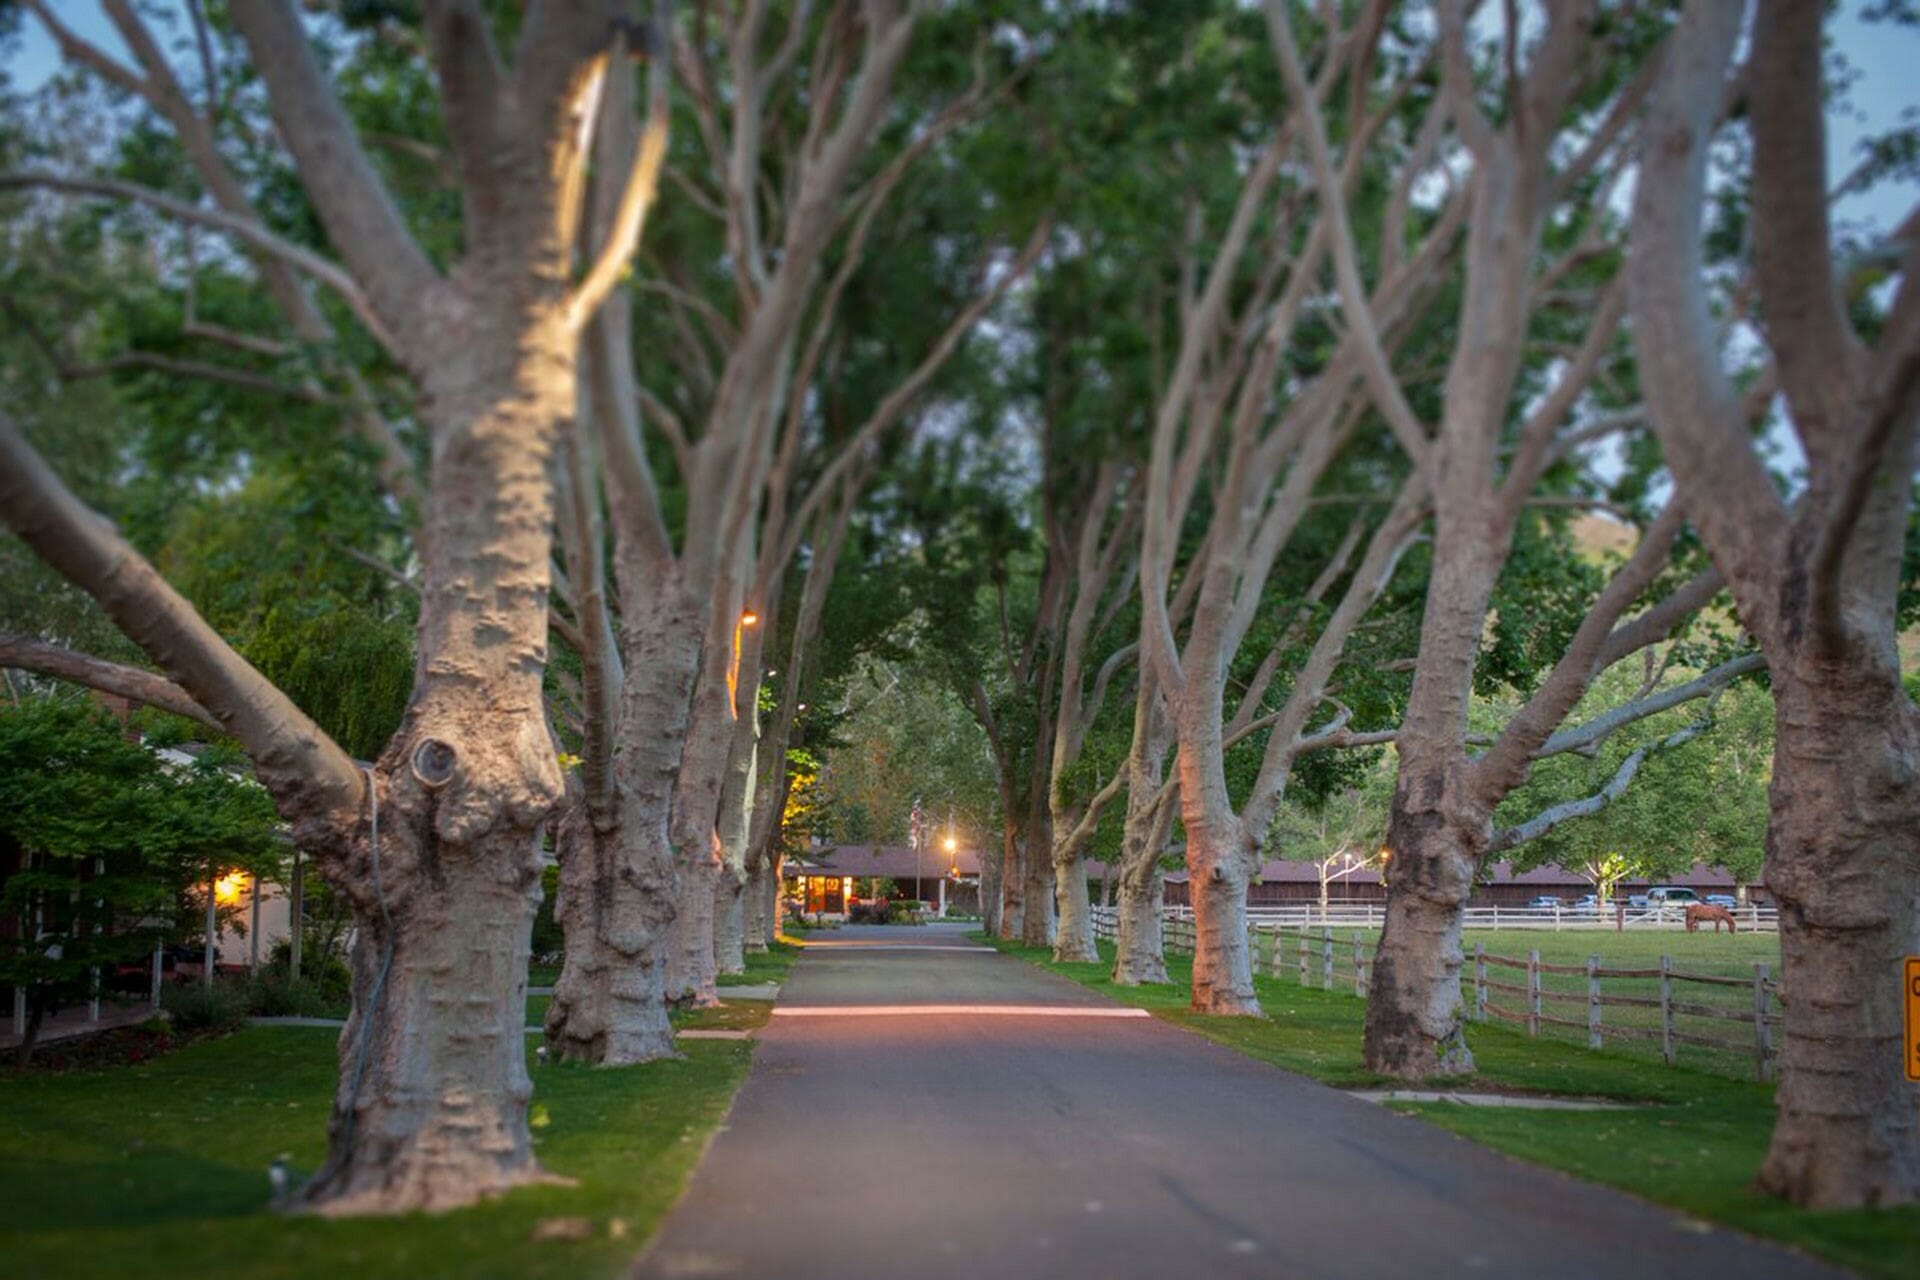 walking path through trees